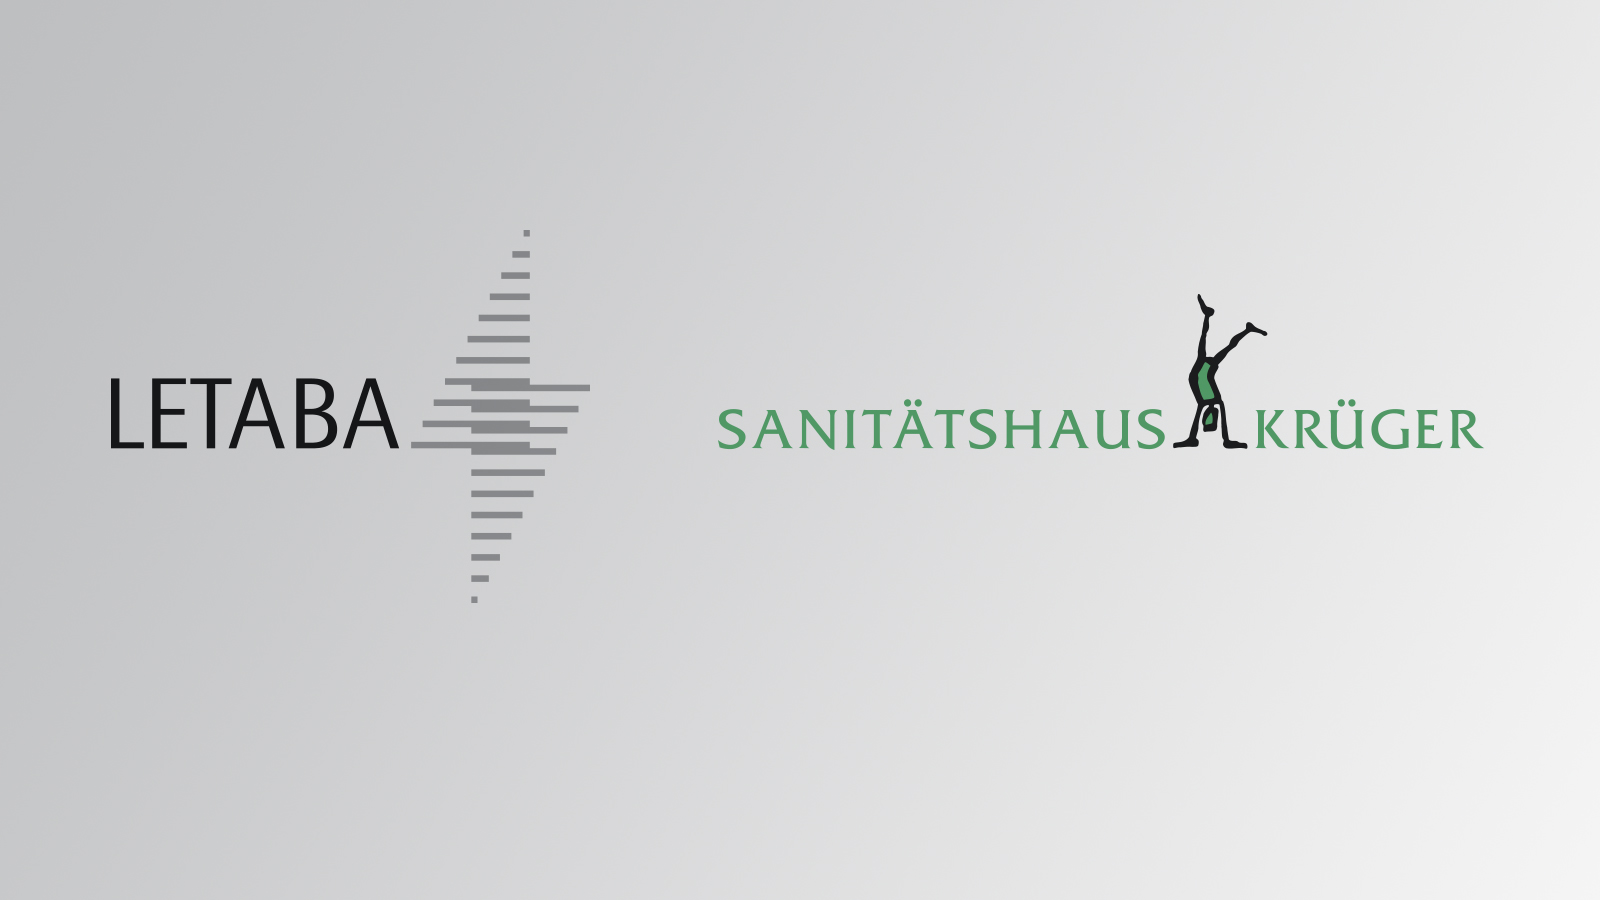 Sanitätshaus Krüger Logo und Firmenzeichen Letaba